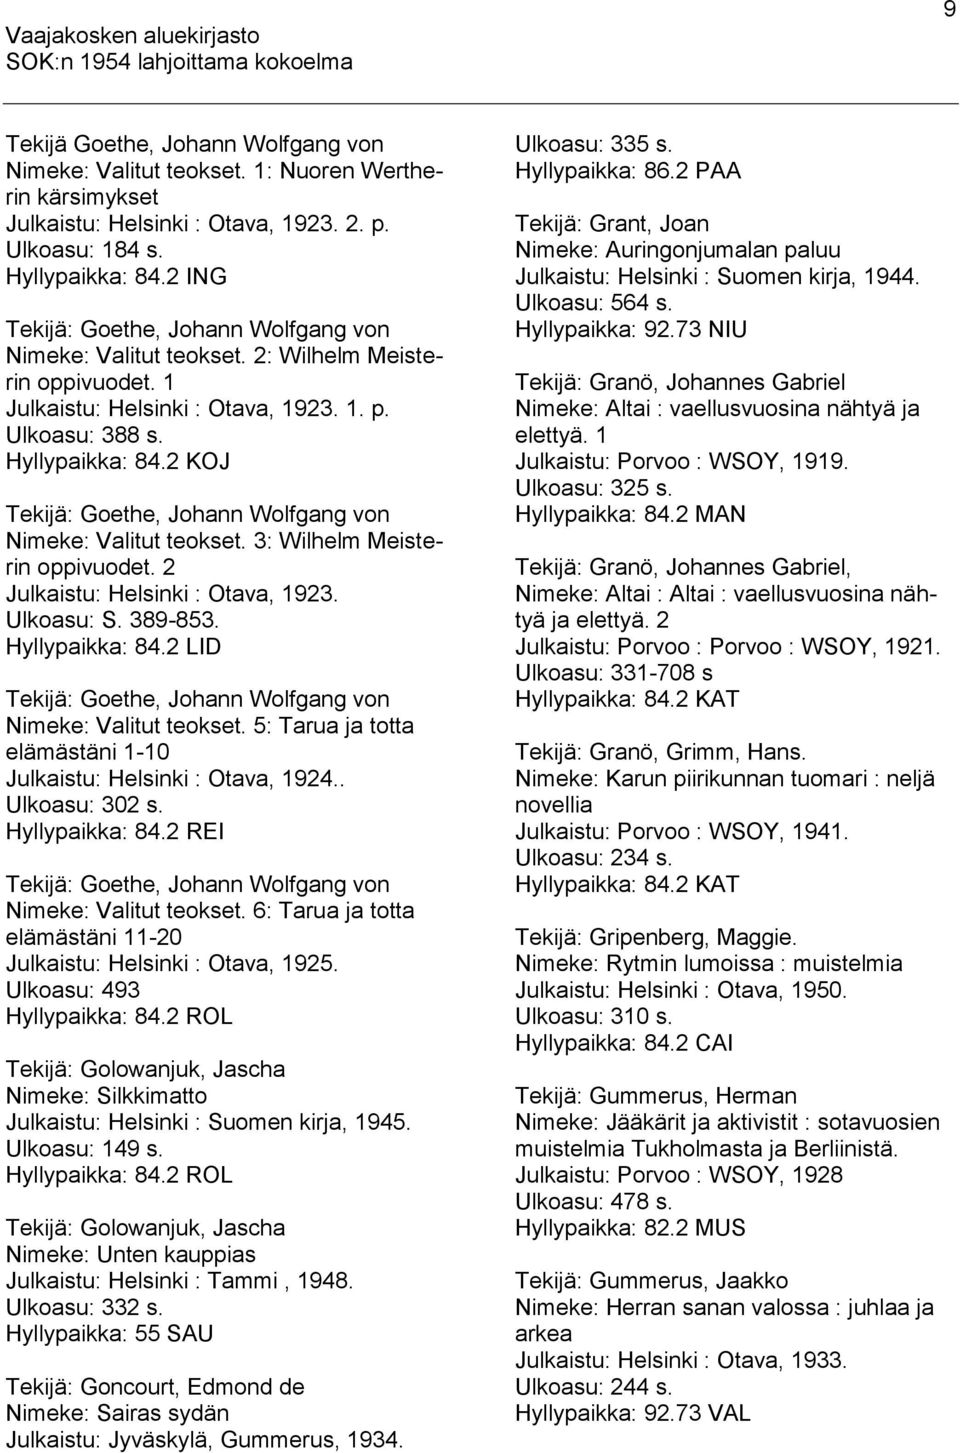 2 KOJ Tekijä: Goethe, Johann Wolfgang von Nimeke: Valitut teokset. 3: Wilhelm Meisterin oppivuodet. 2 Julkaistu: Helsinki : Otava, 1923. Ulkoasu: S. 389-853. Hyllypaikka: 84.